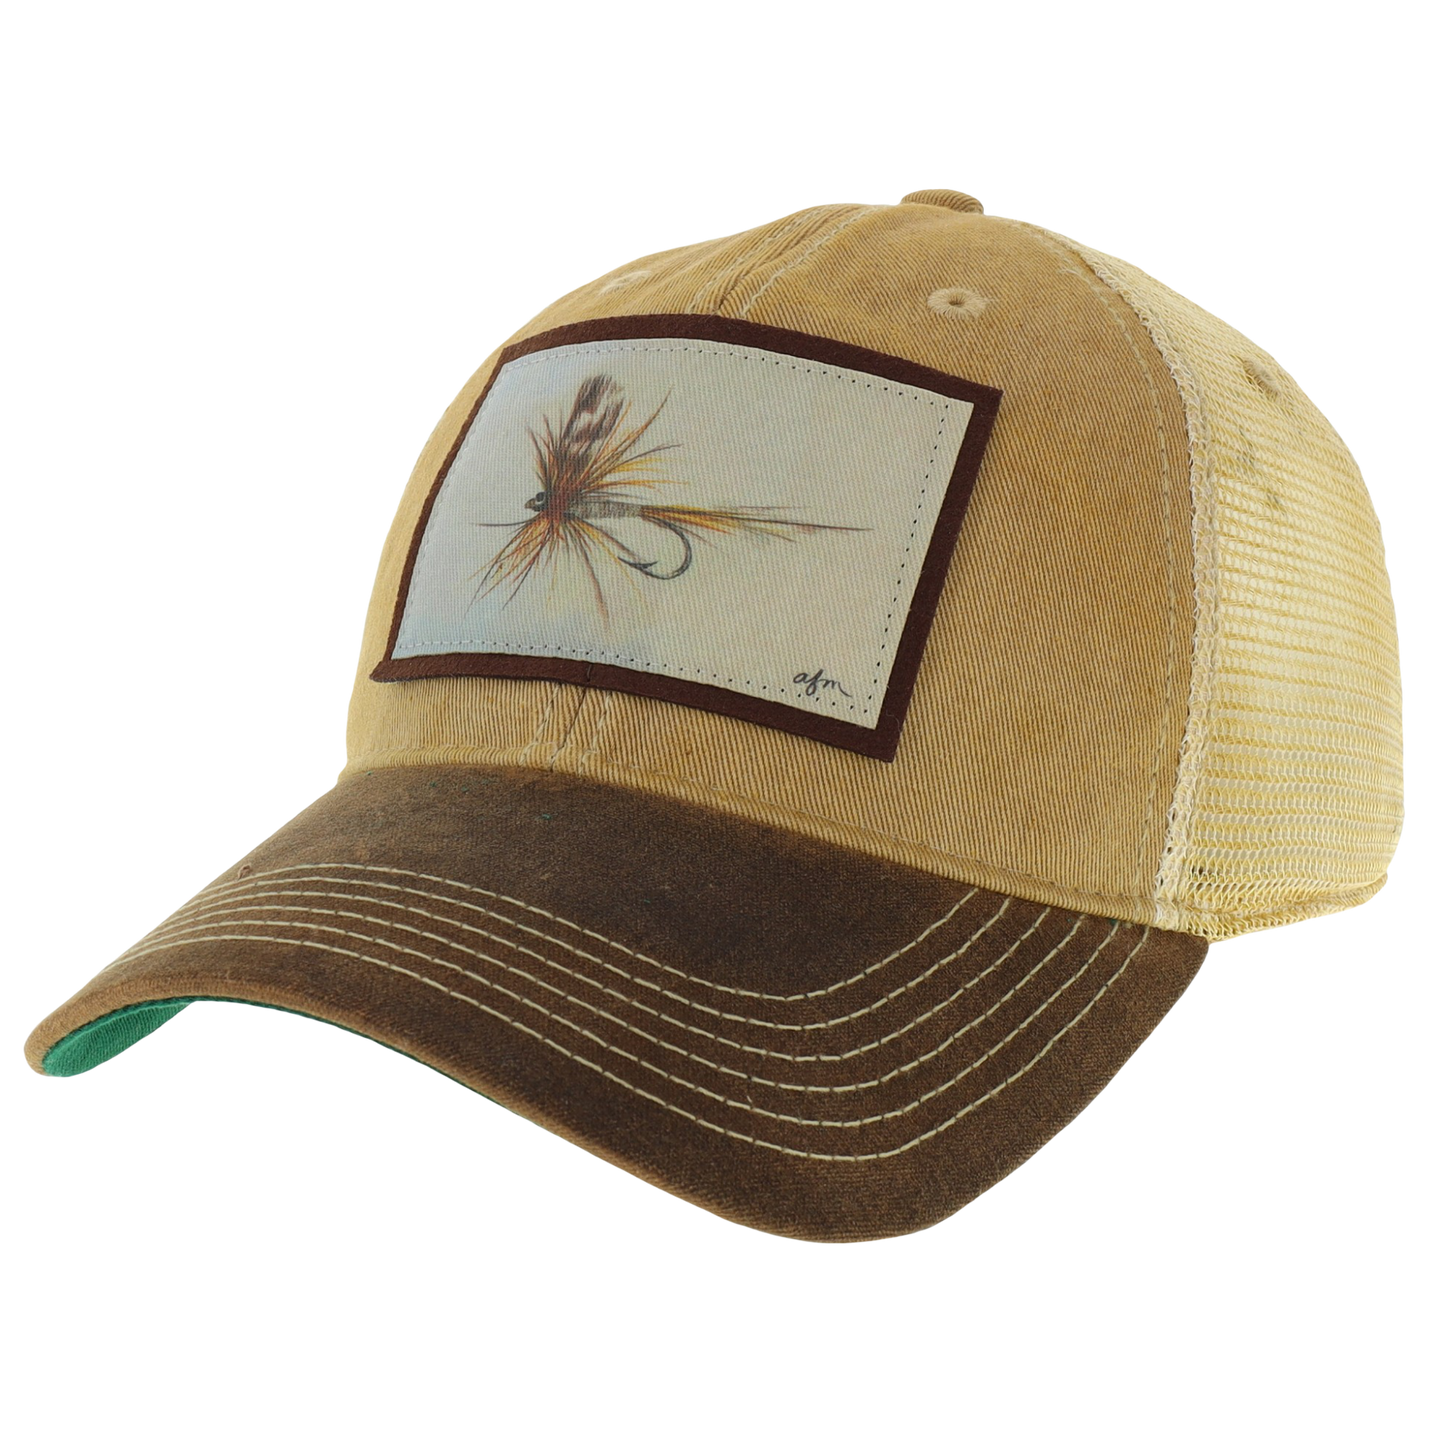 Adams Fly Waxed Cotton Trucker Hat in Khaki/Brown